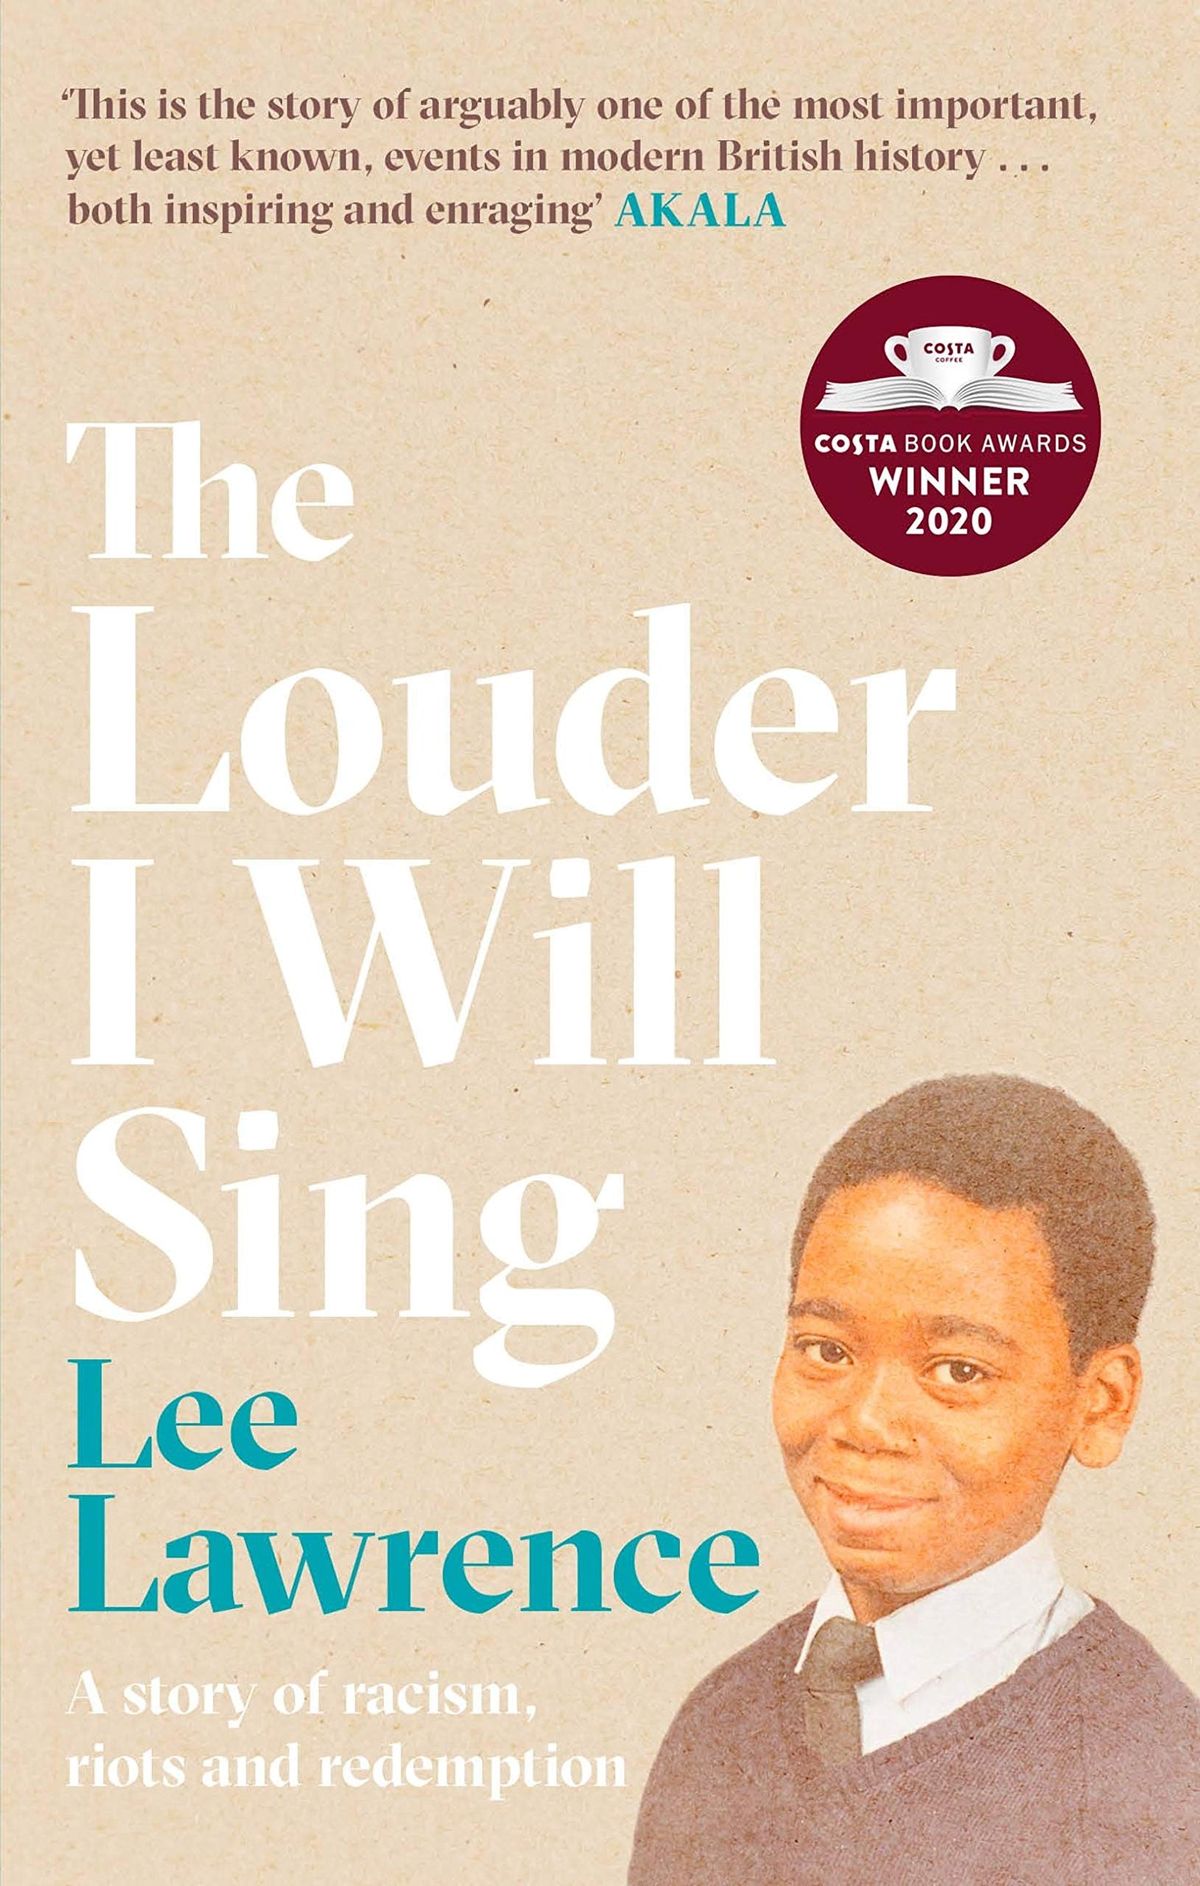 リー・ローレンスが歌う大声は世代の力の物語—抜粋